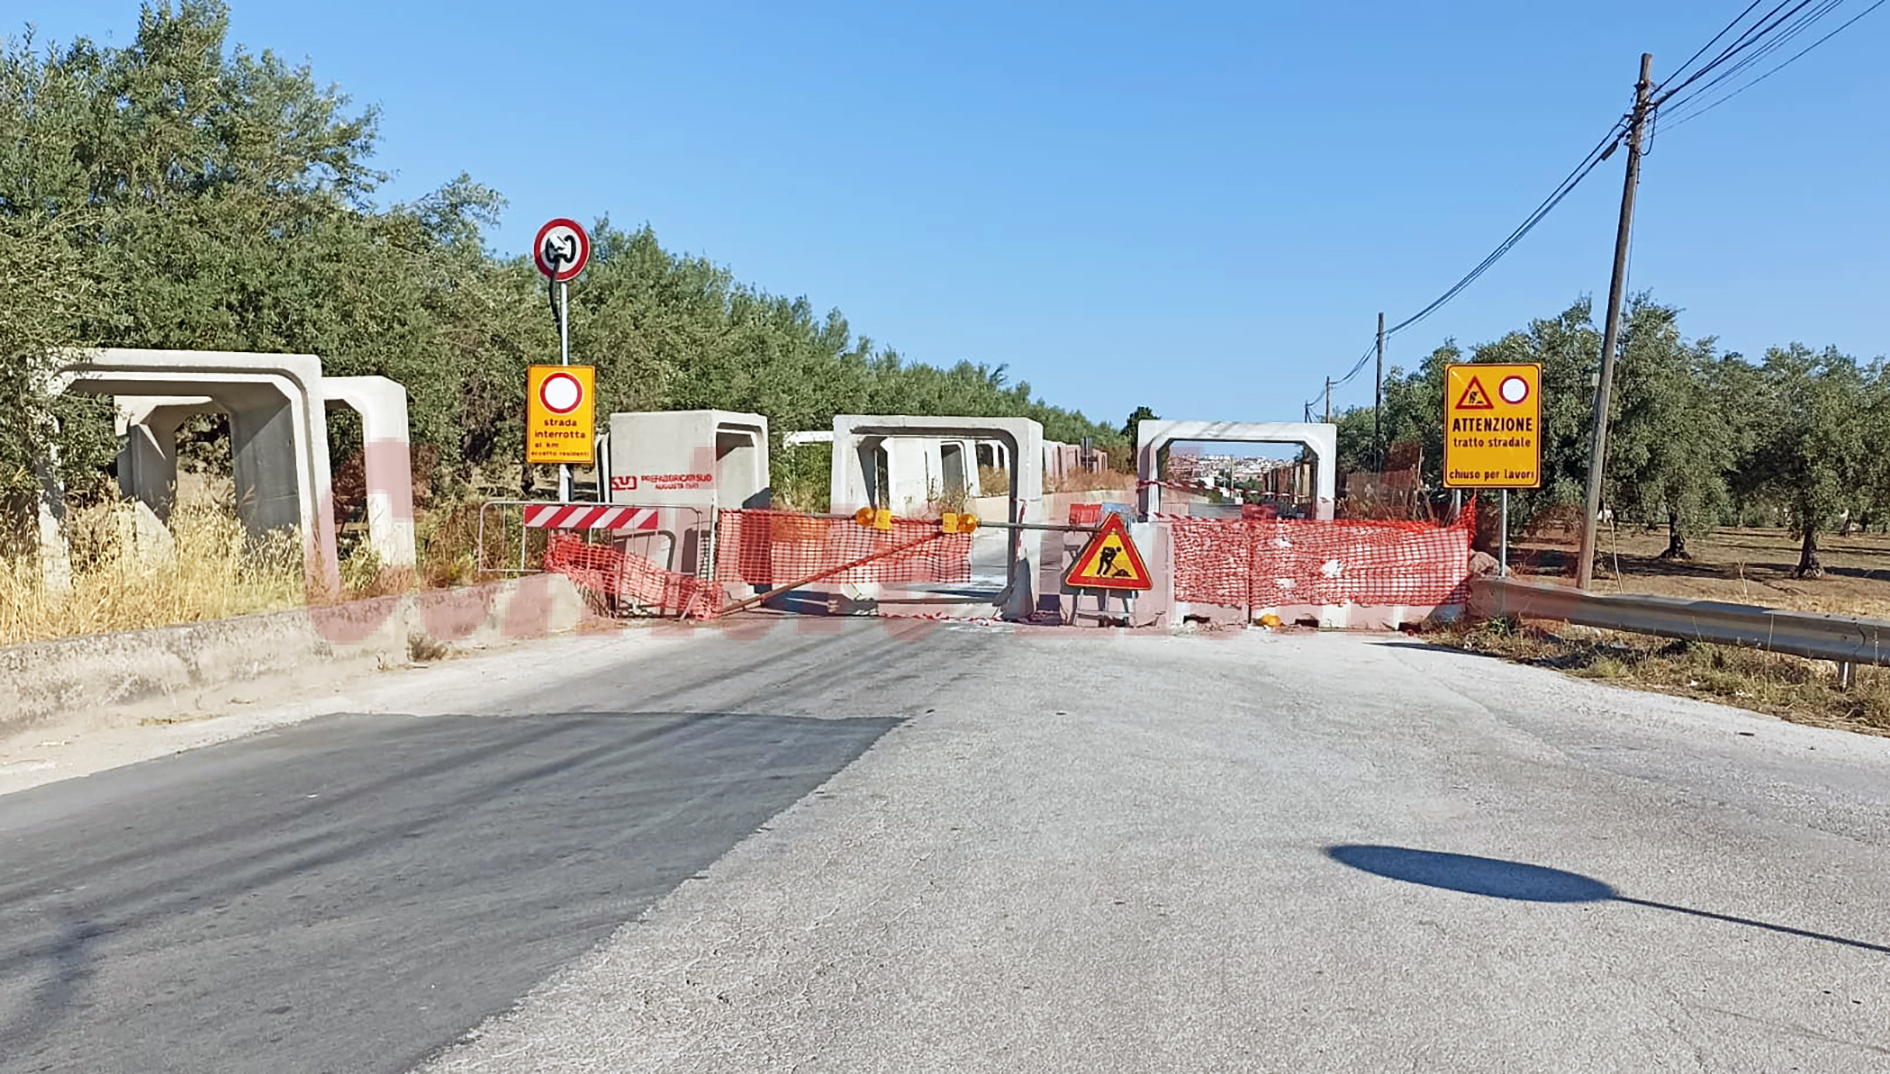 “Apertura per fine agosto 2022”, il cantiere sulla Rosolini-Pachino tra disagi, proroghe e lamentele